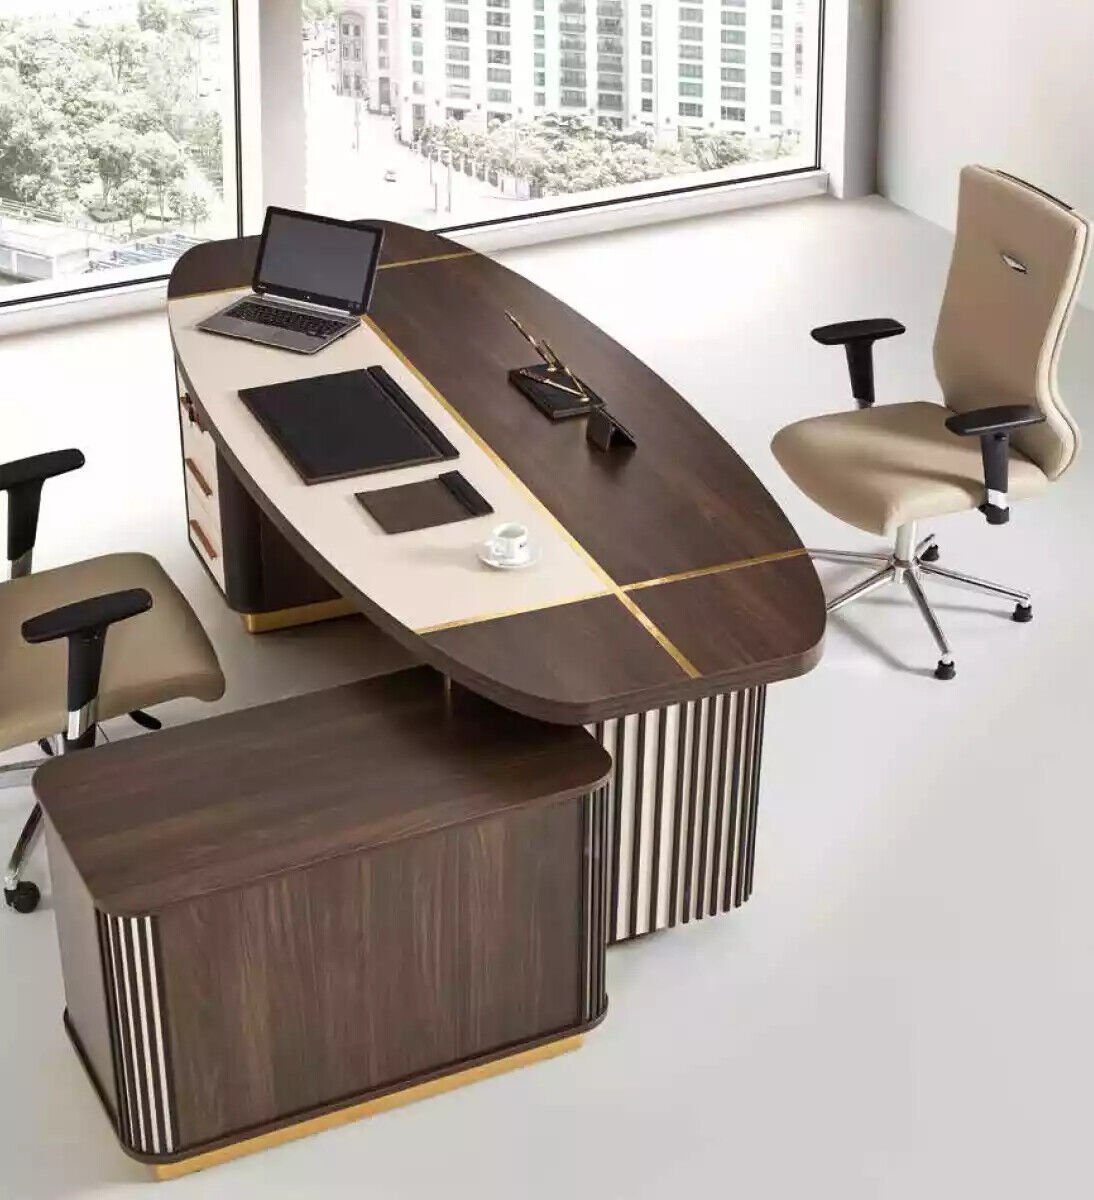 JVmoebel Eckschreibtisch Ovaler Schreibtisch Tisch 250x165 Luxus Tische Eckschreibtische, Made In Europe